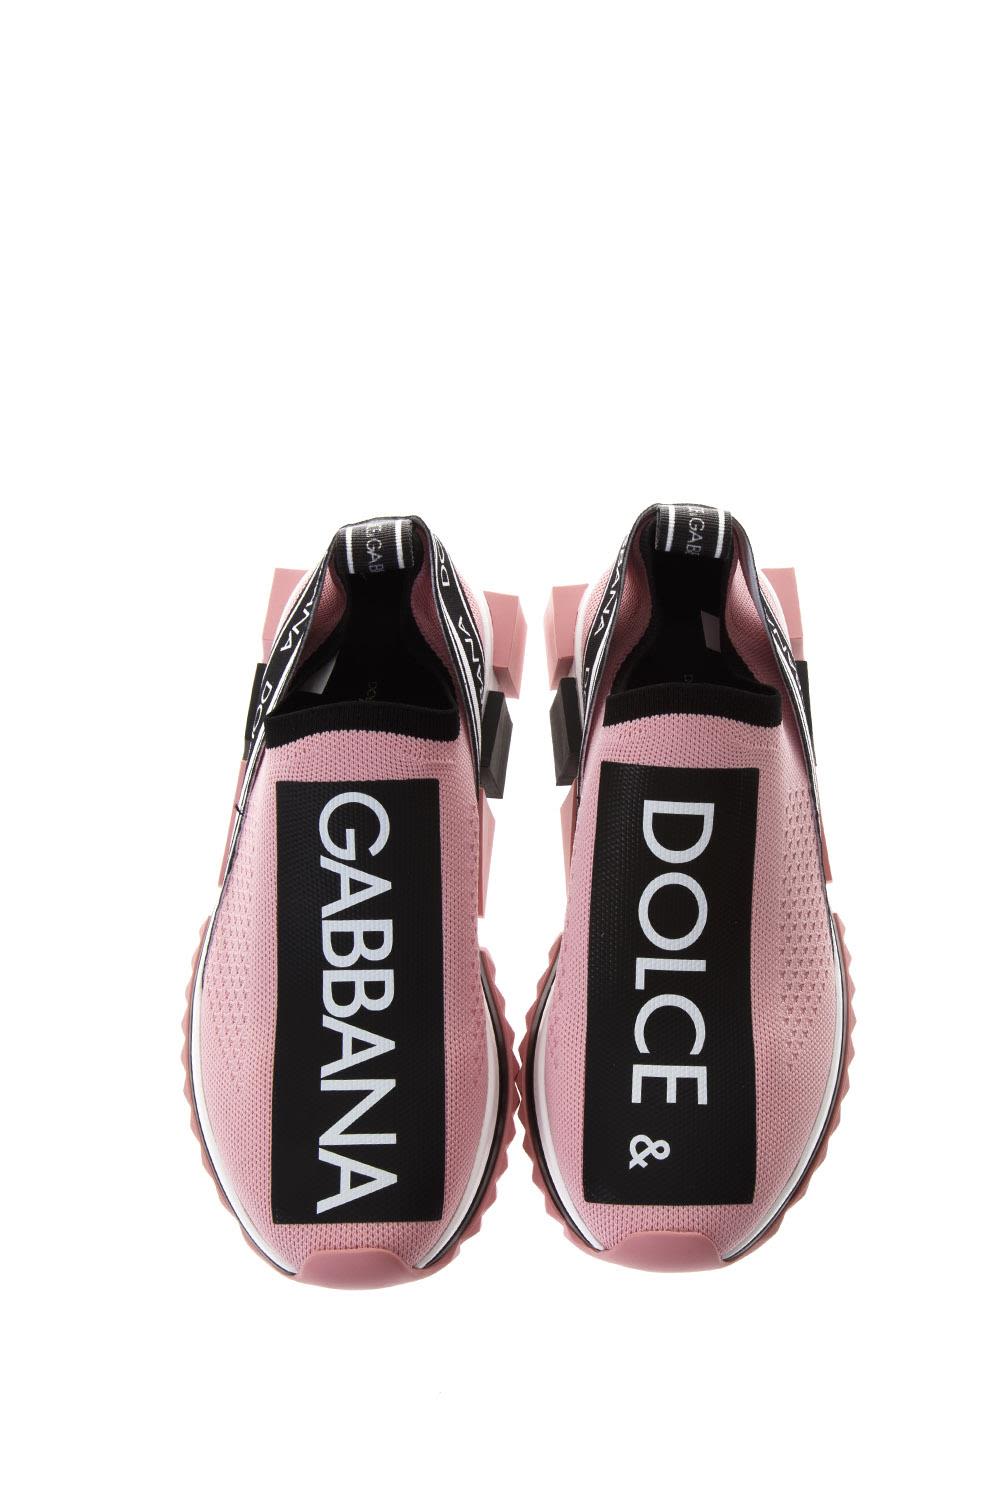 Dolce & Gabbana Dolce & Gabbana Pink & Black Sorrento Sneakers In Nylon ...